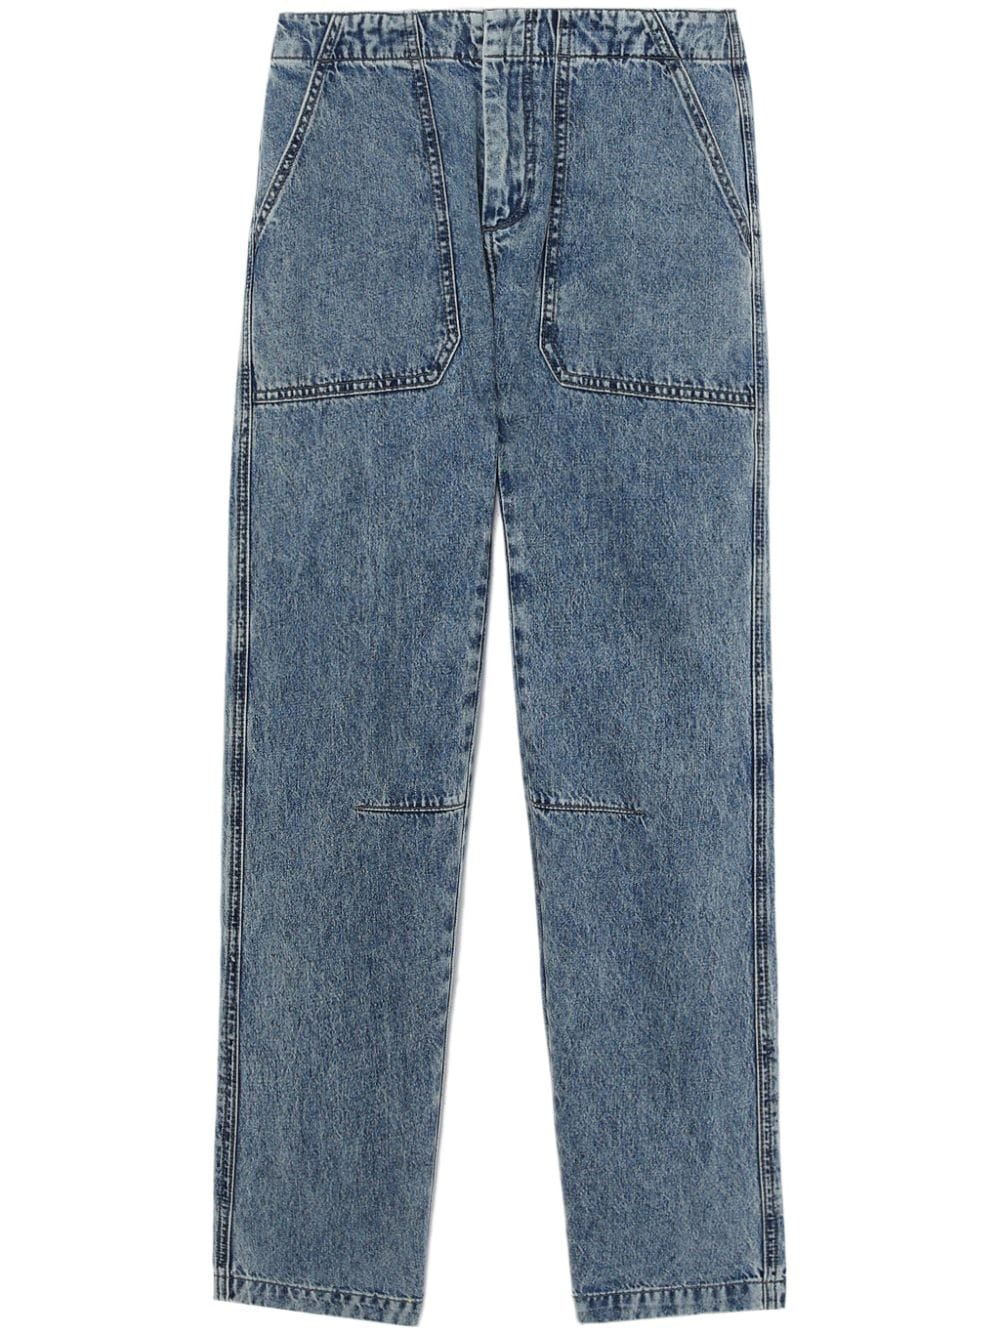 rag & bone jean leyton à coupe droite - bleu